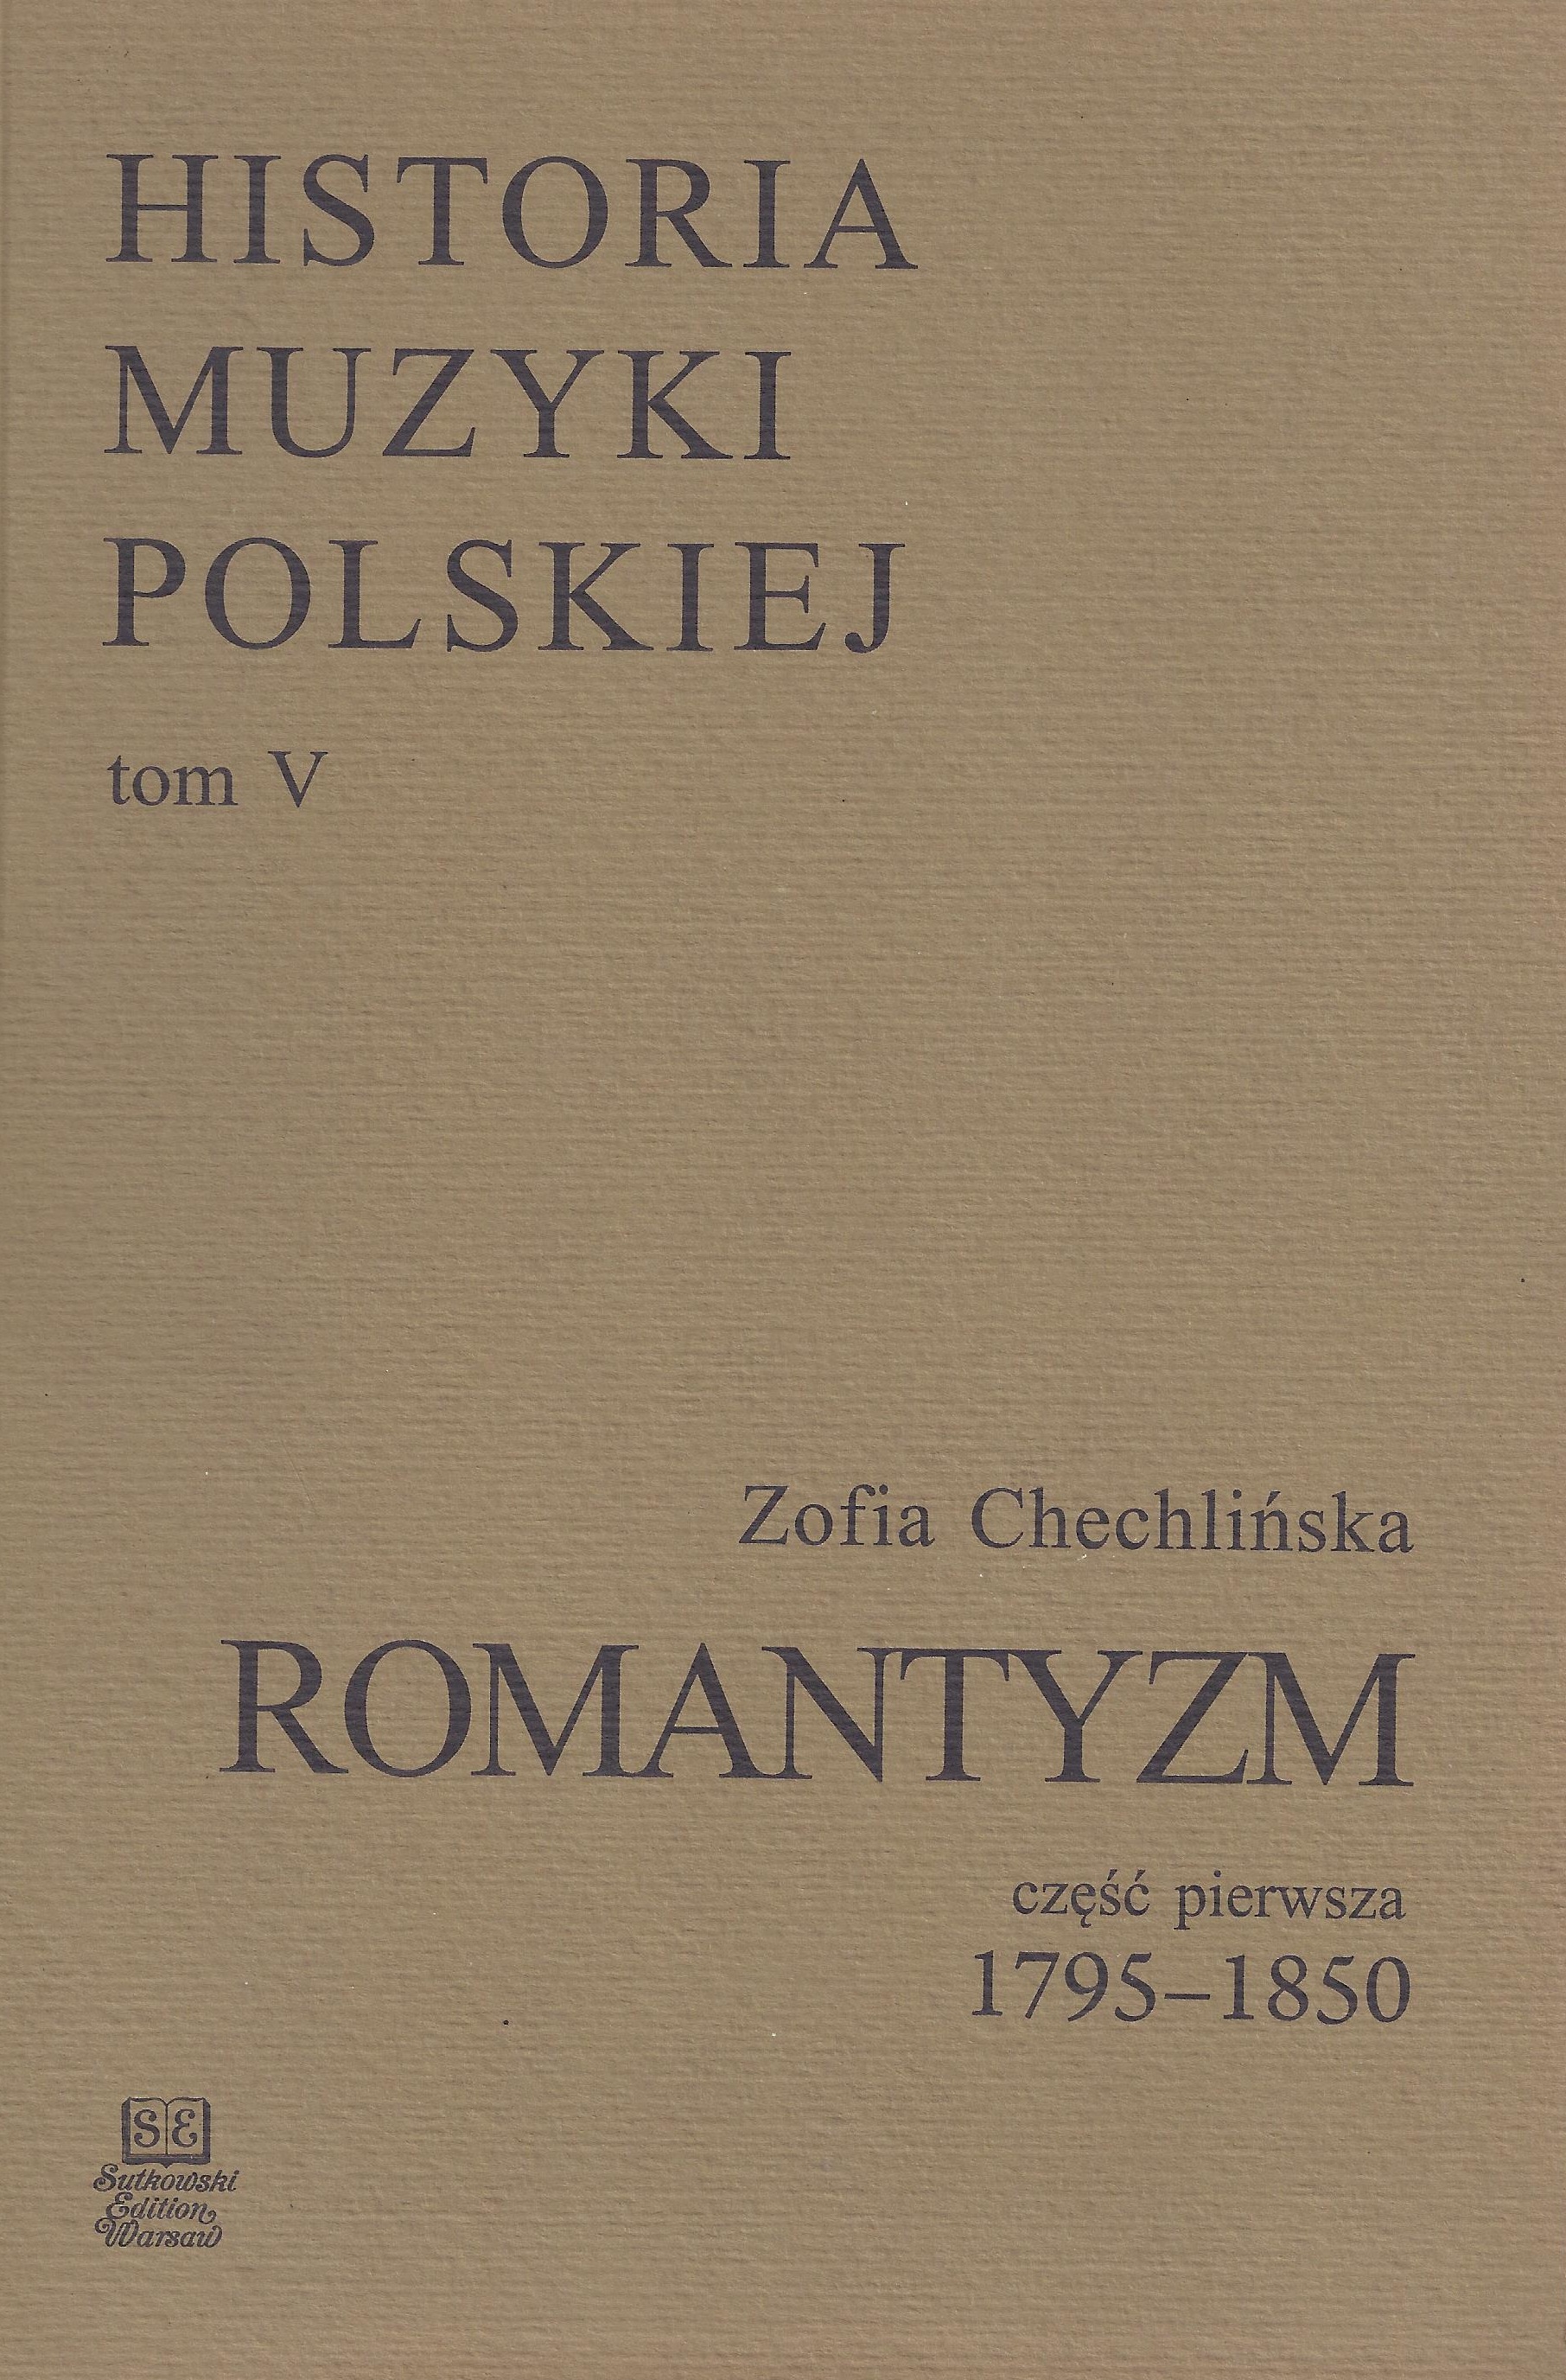 Historia Muzyki Polskiej tom V cz. 1 – Romantyzm (1795-1850)